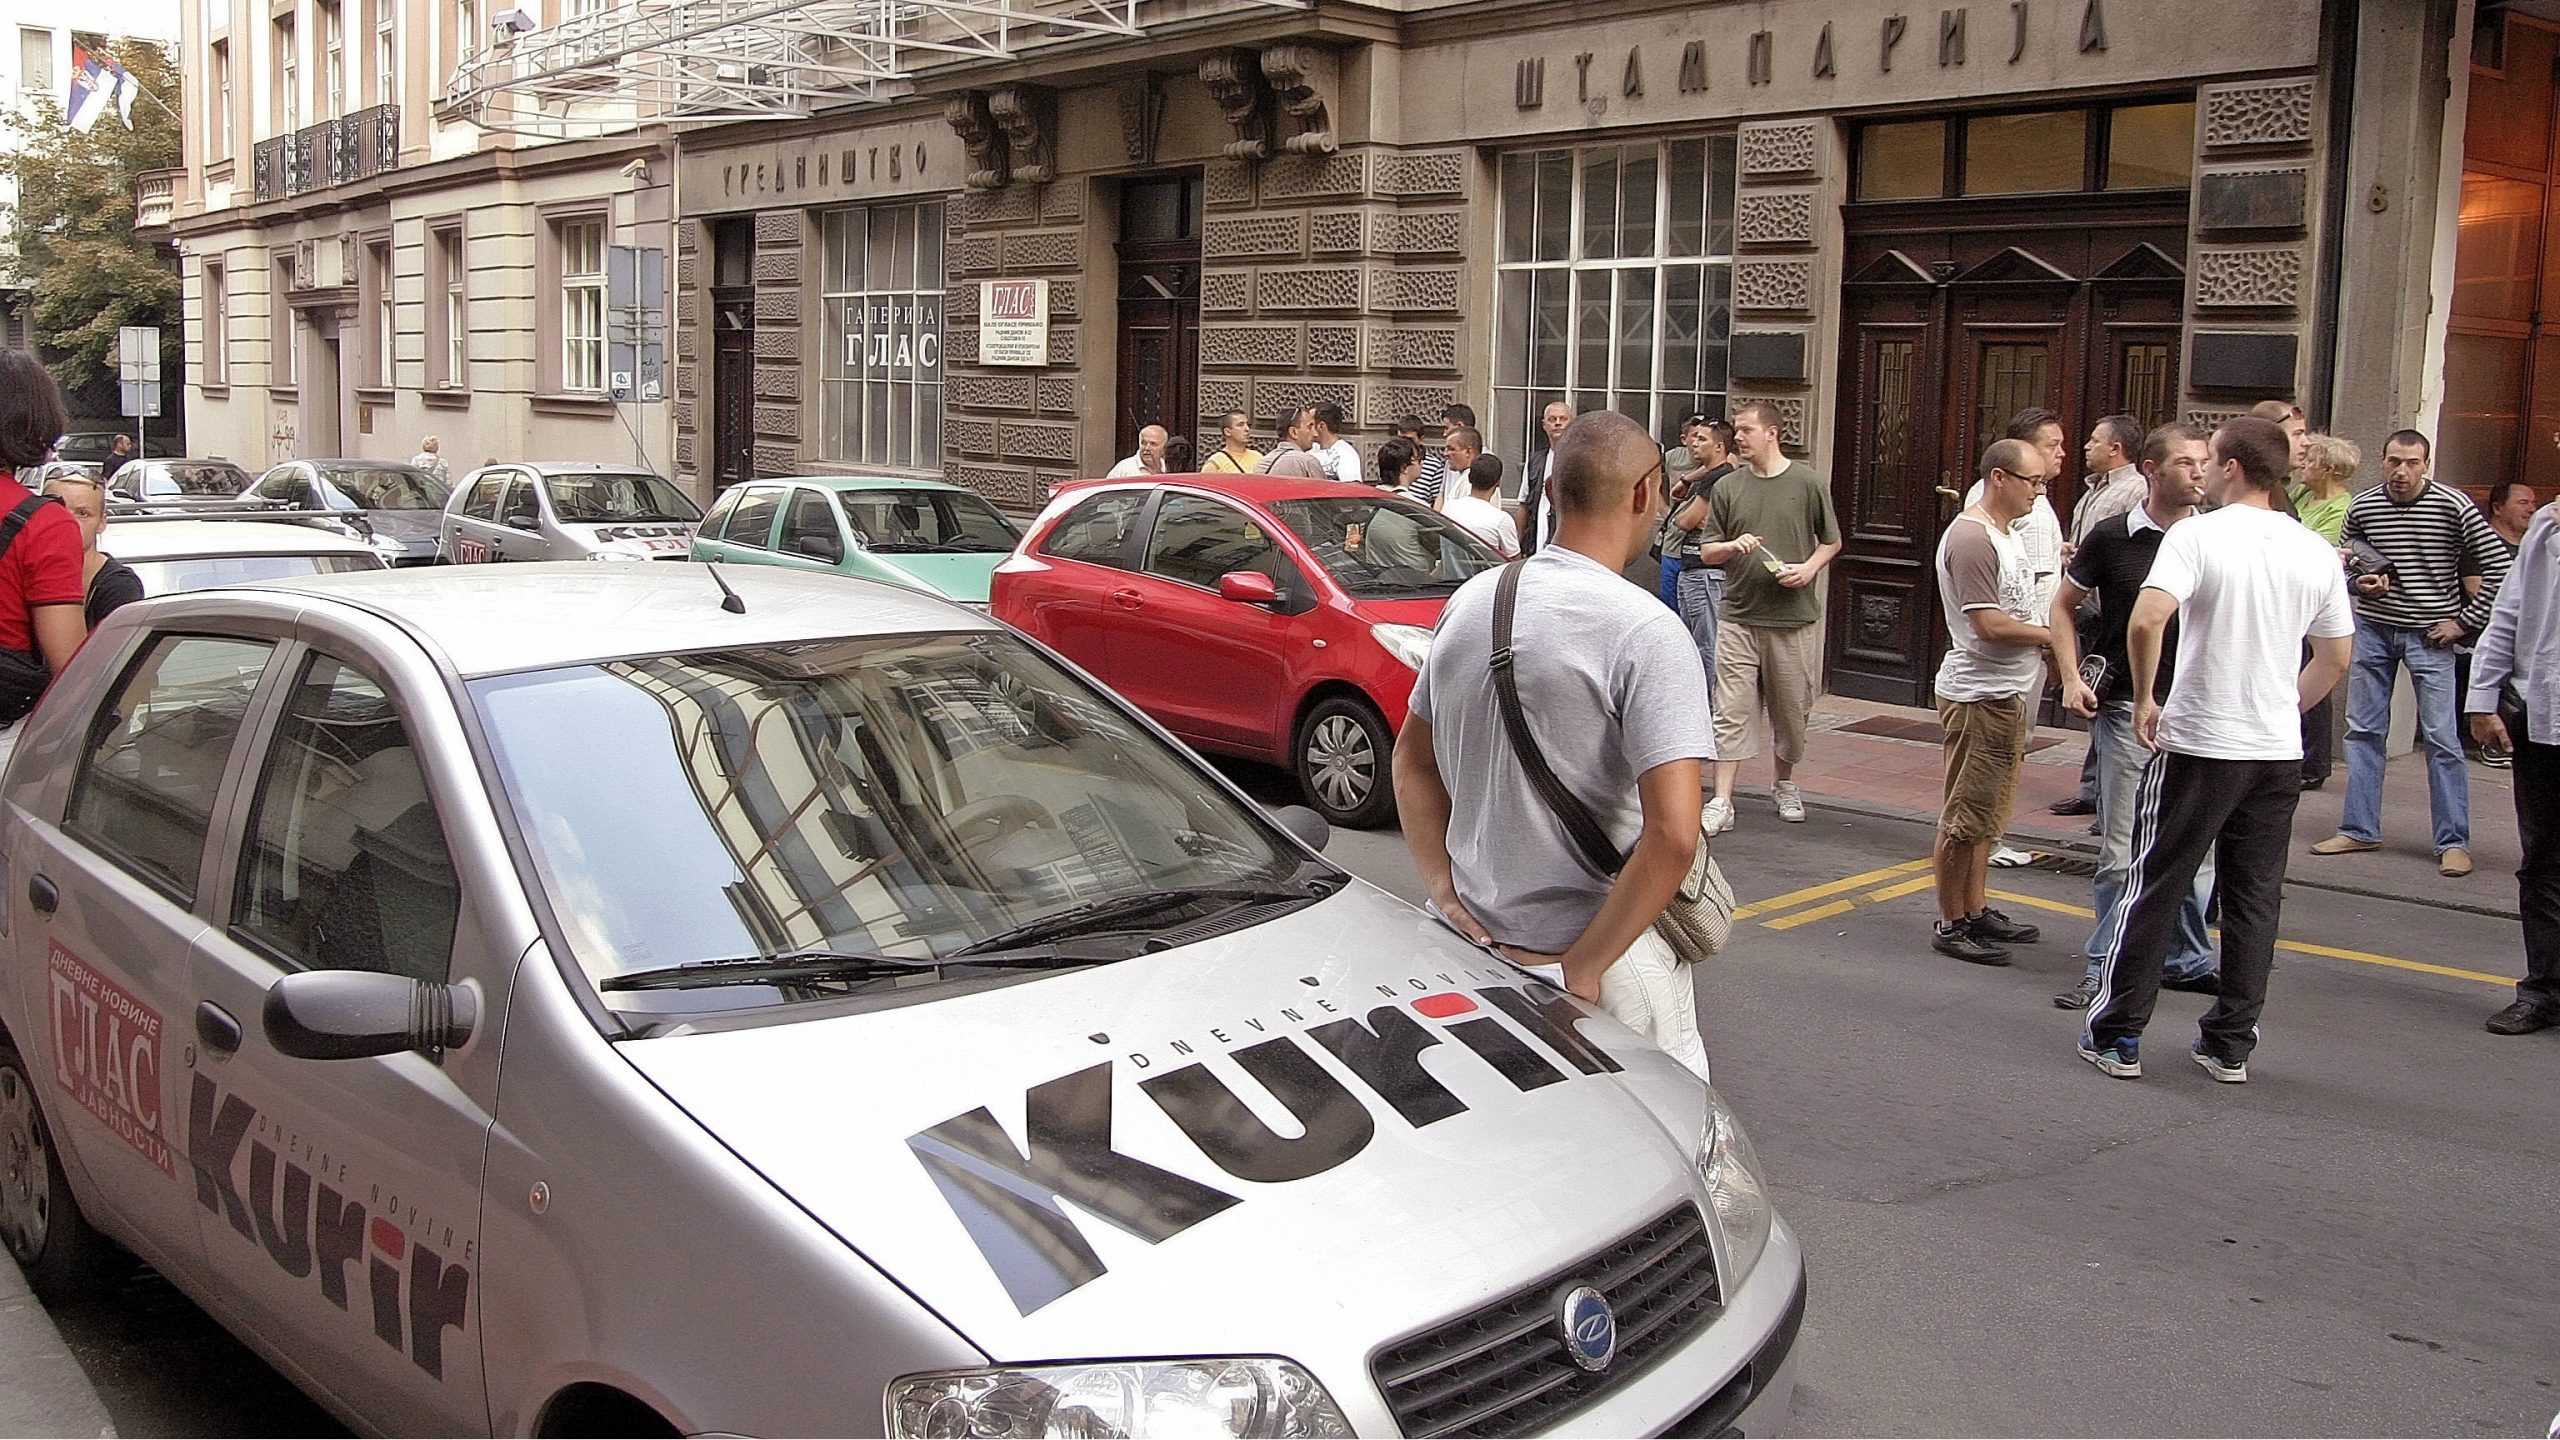 Presuda protiv odgovornog urednika Kurira zbog povrede dostojanstva Jugoslava Ćosića 1